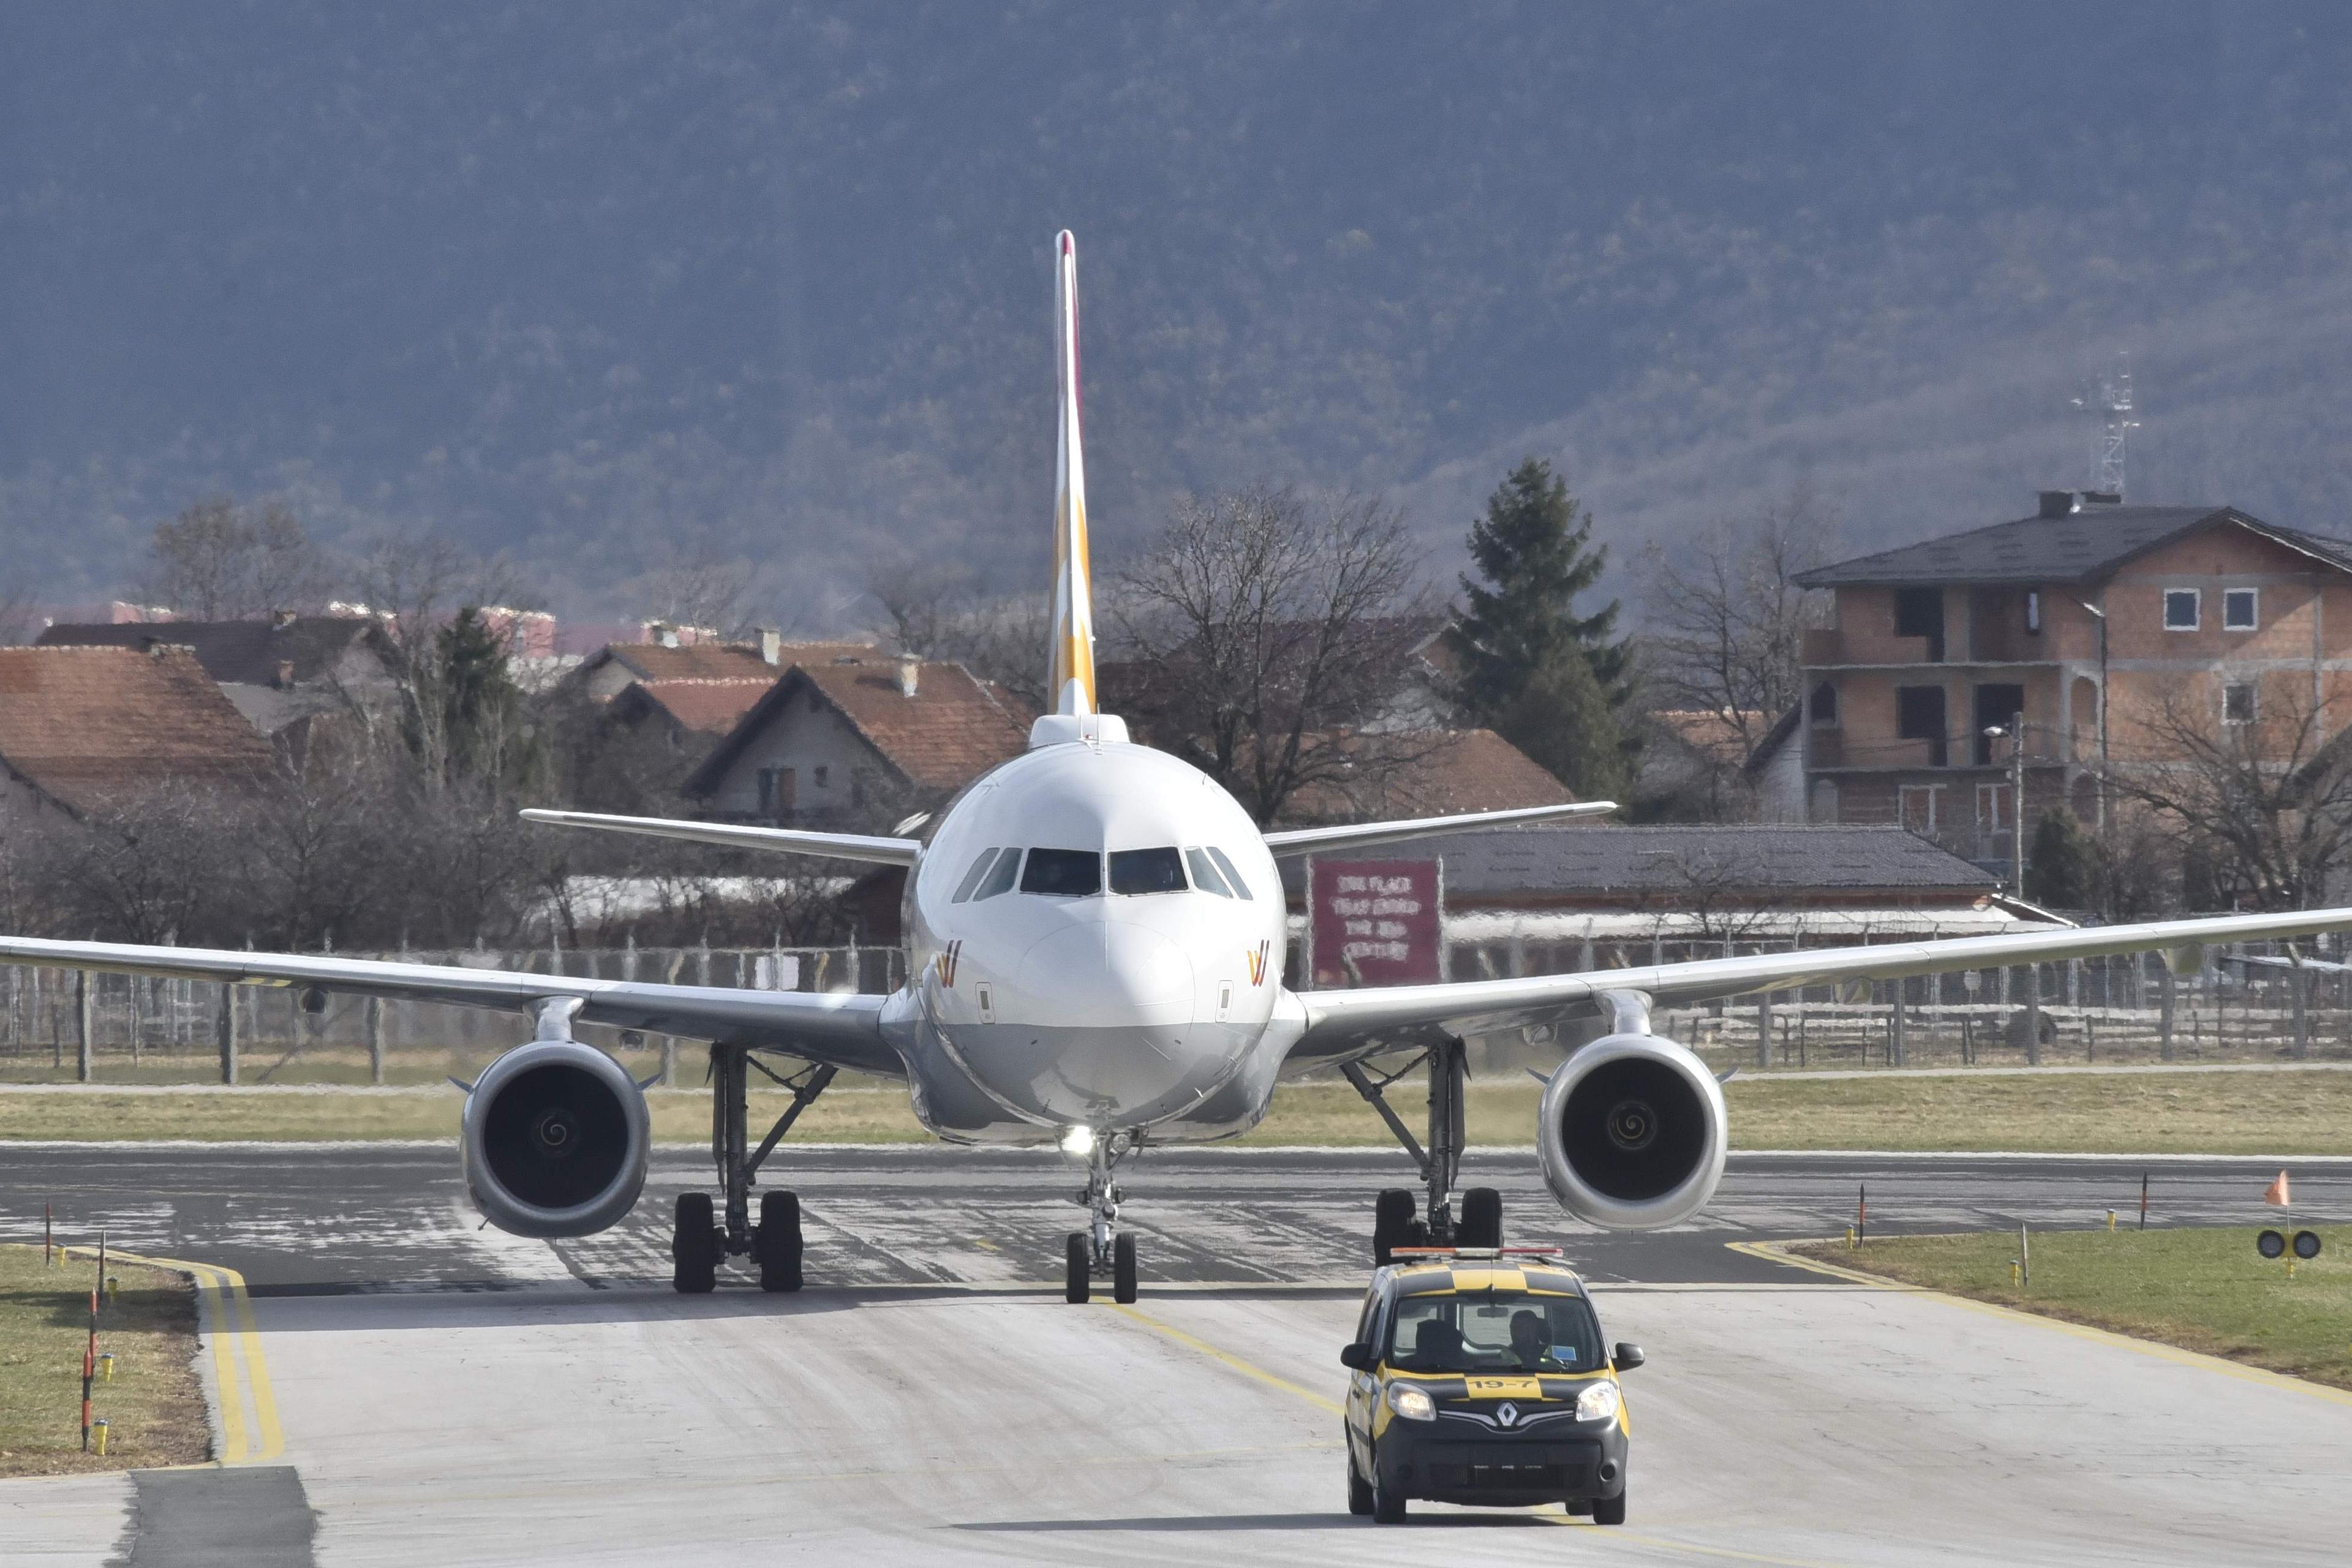 Prije nekoliko godina došlo je do curenja ugljenmonoksida u pilotskoj kabini u sportskom zrakoplovu koji je letio iz Splita za Beograd, a piloti su ga, srećom, uspjeli prinudno spustiti na Sarajevski aerodrom - Avaz